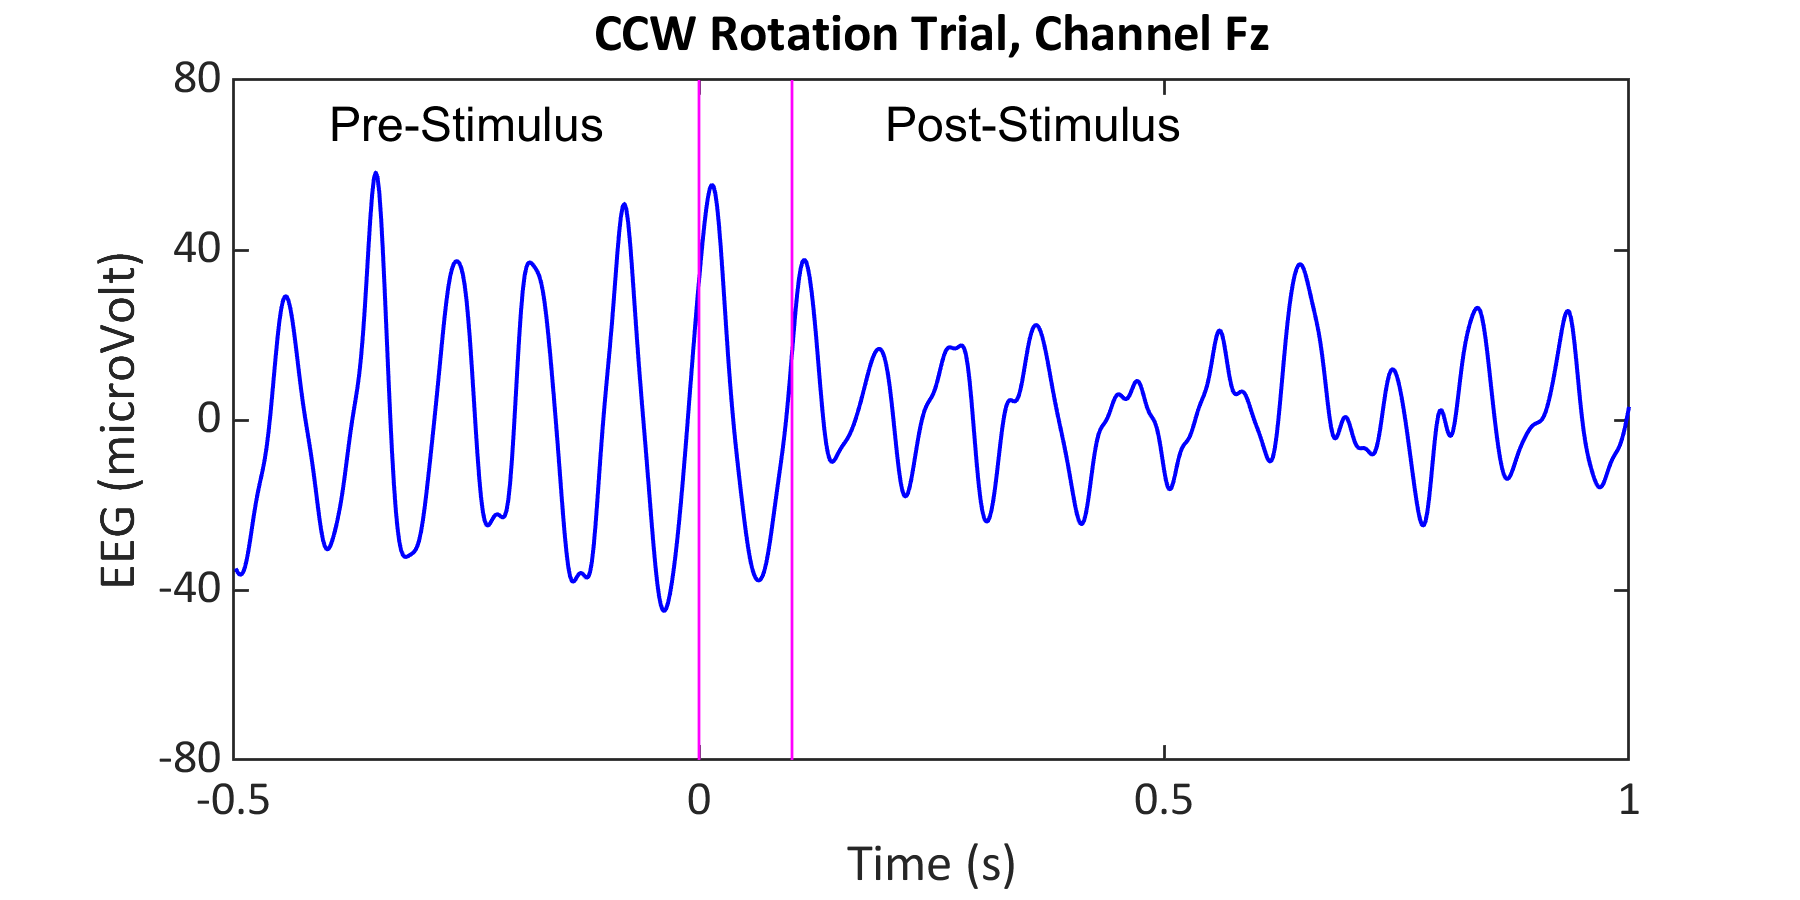 CCW Rotation Trail, Channel Fz